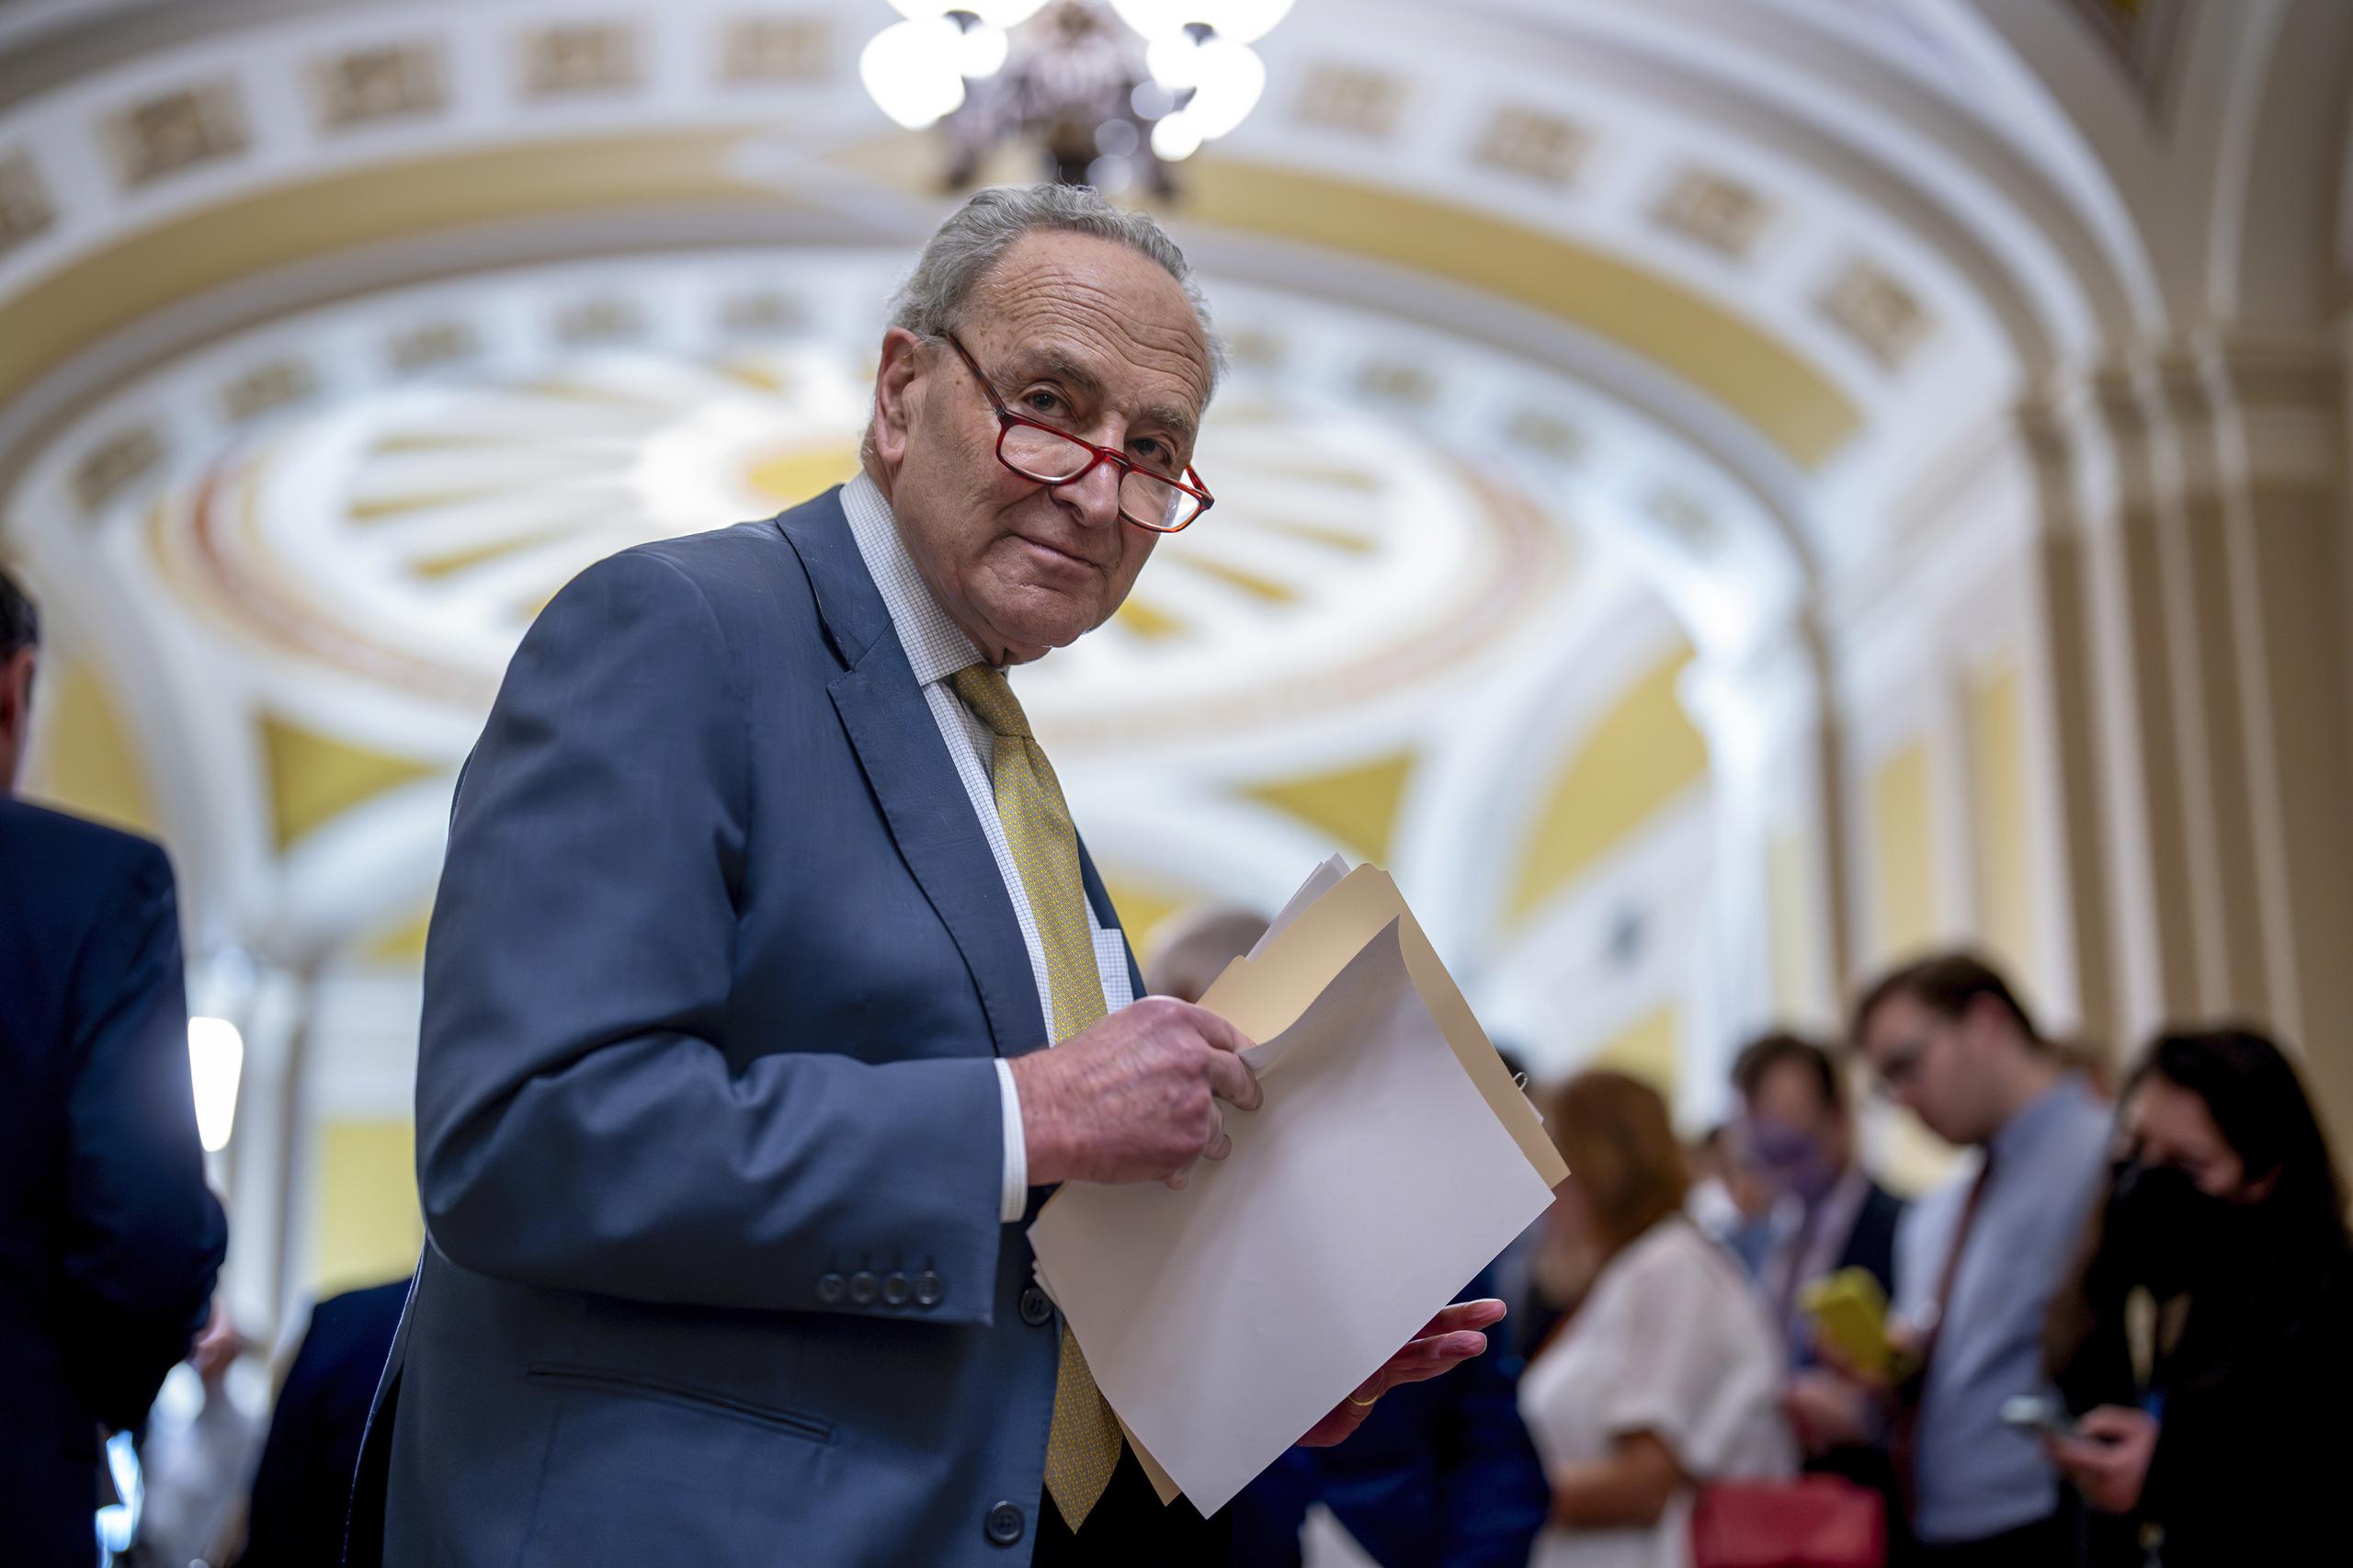 El líder demócrata en el senado, Chuck Schumer, Schumer, dijo que promoverá una votación en el Senado sobre el paquete de fondos para la próxima semana, incluso sin un acuerdo.